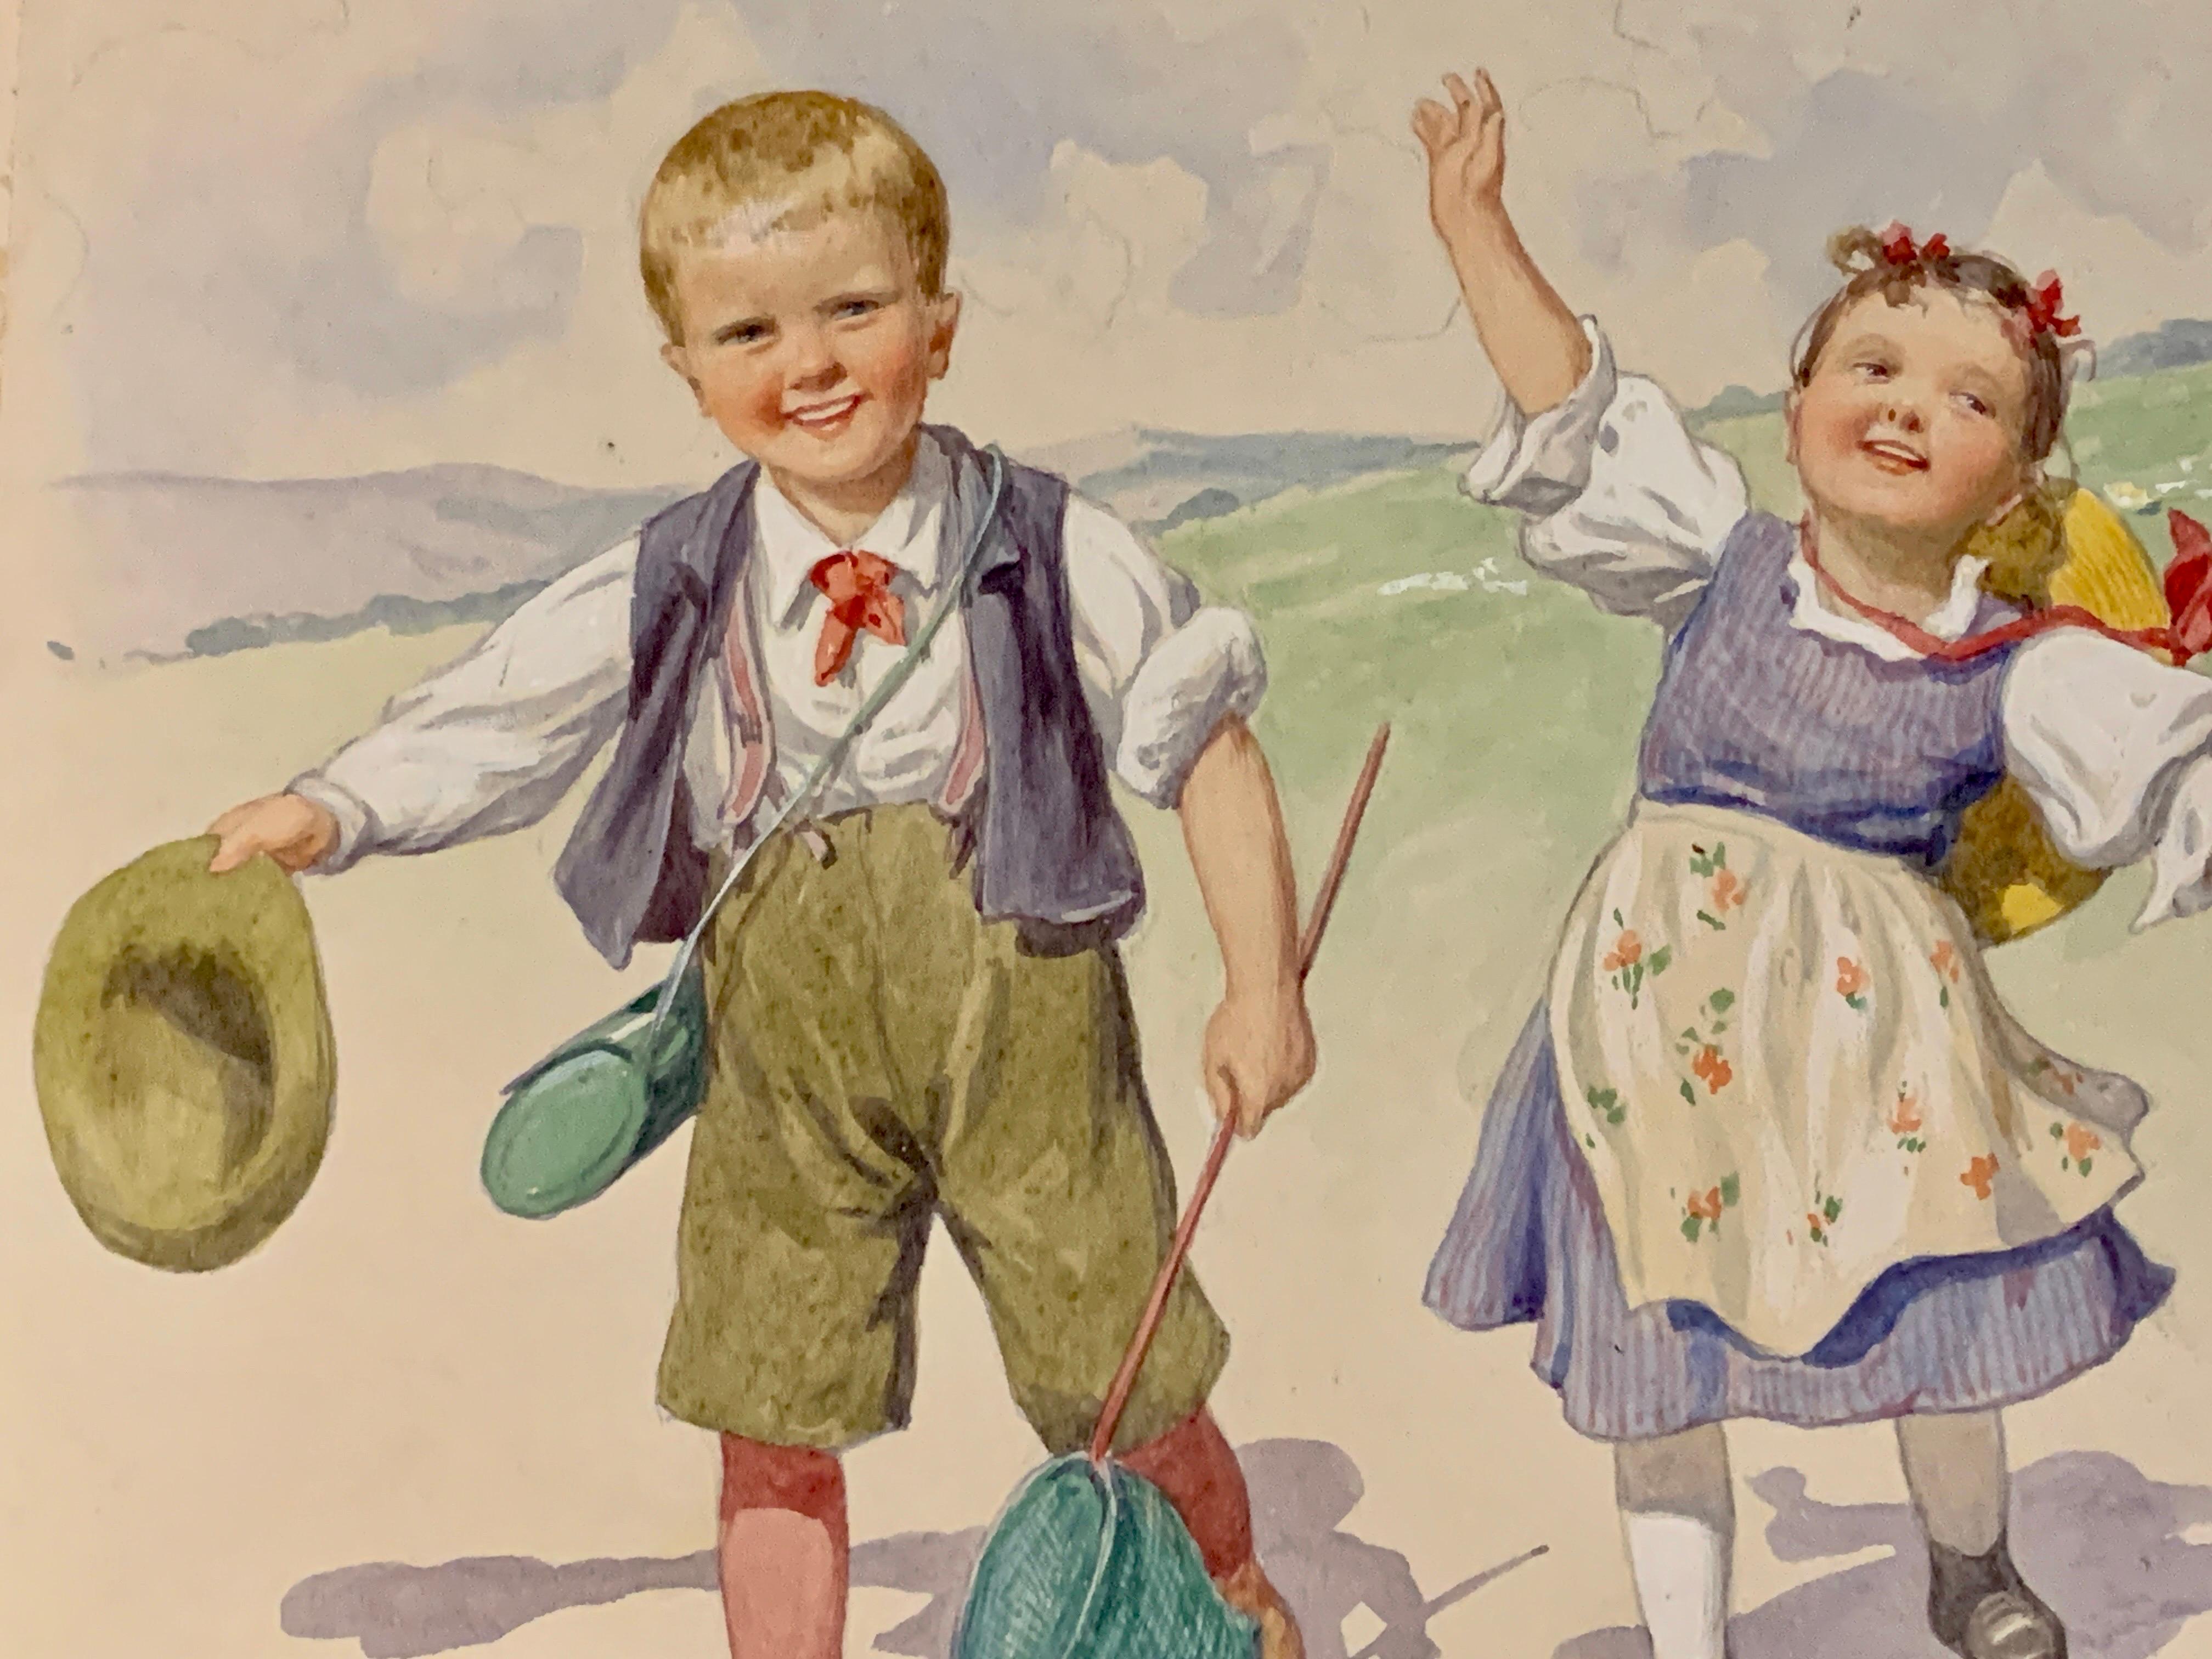 Österreichisch-deutsche Kinder des frühen 20. Jahrhunderts, die gemeinsam in einer Landschaft spielen  (Viktorianisch), Art, von Karl Feiertag